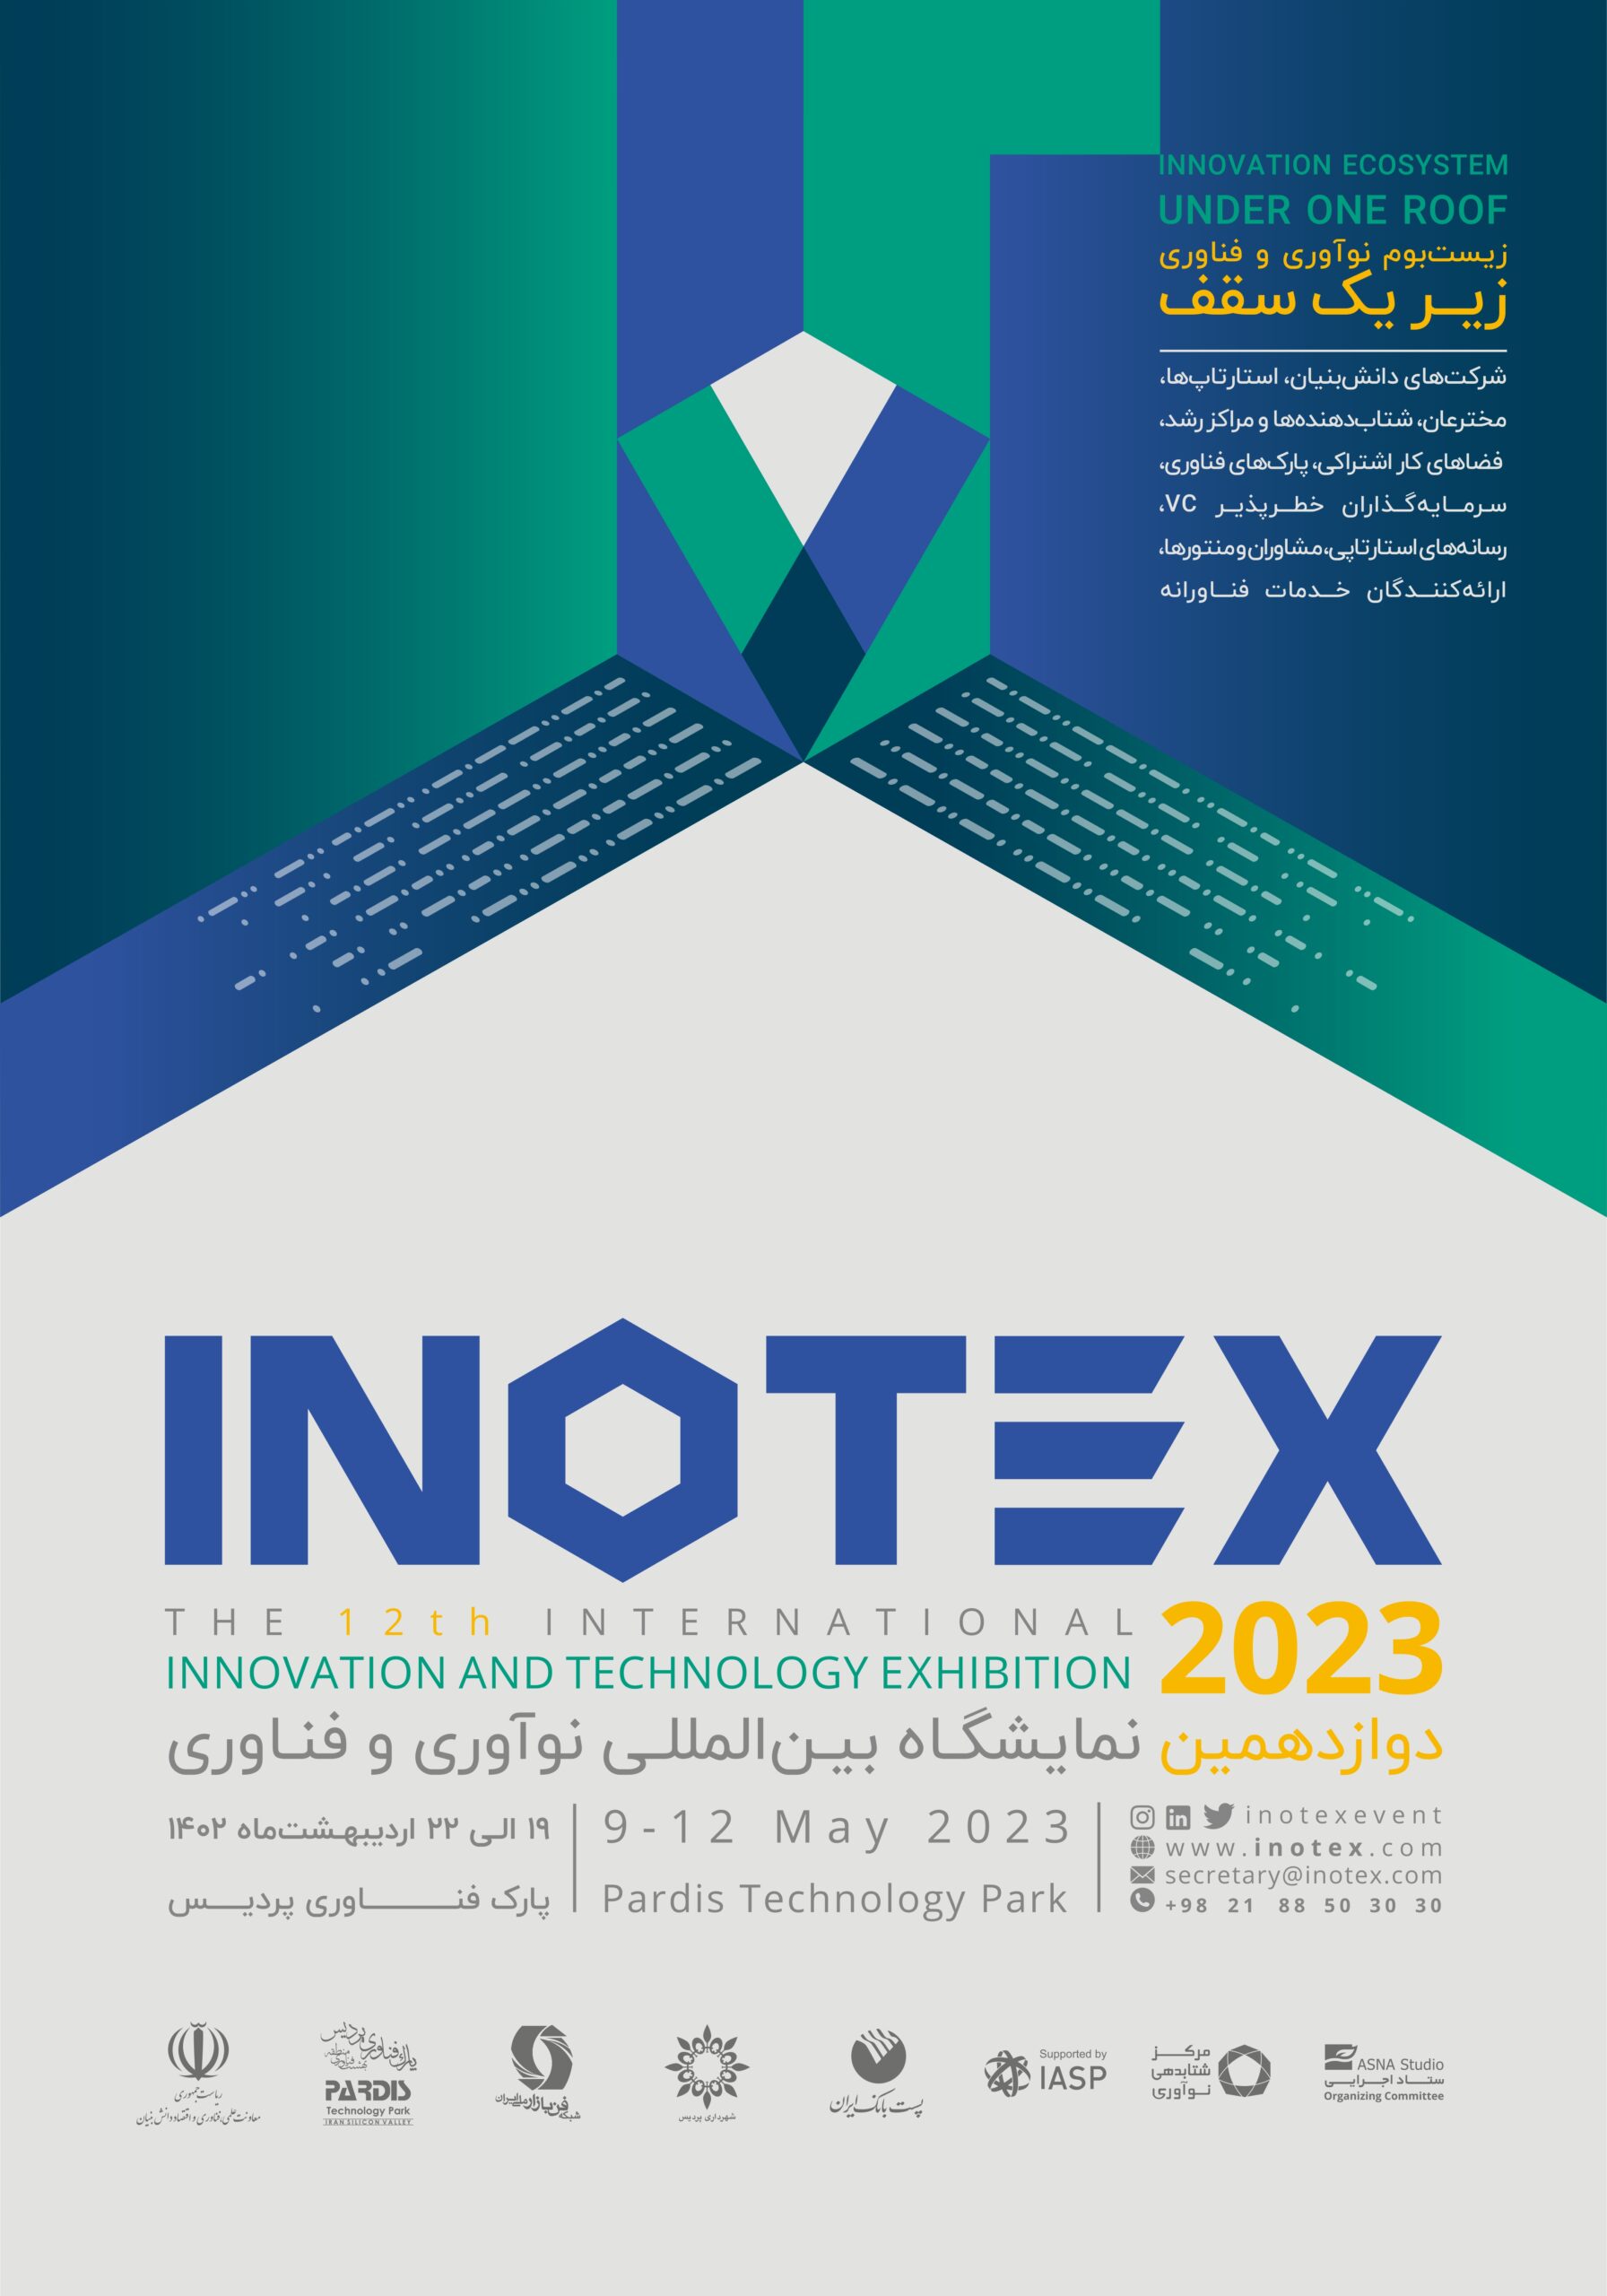 اینوتکس( INOTEX ) دوازدهمین نمایشگاه بین المللی نوآوری و فناوری